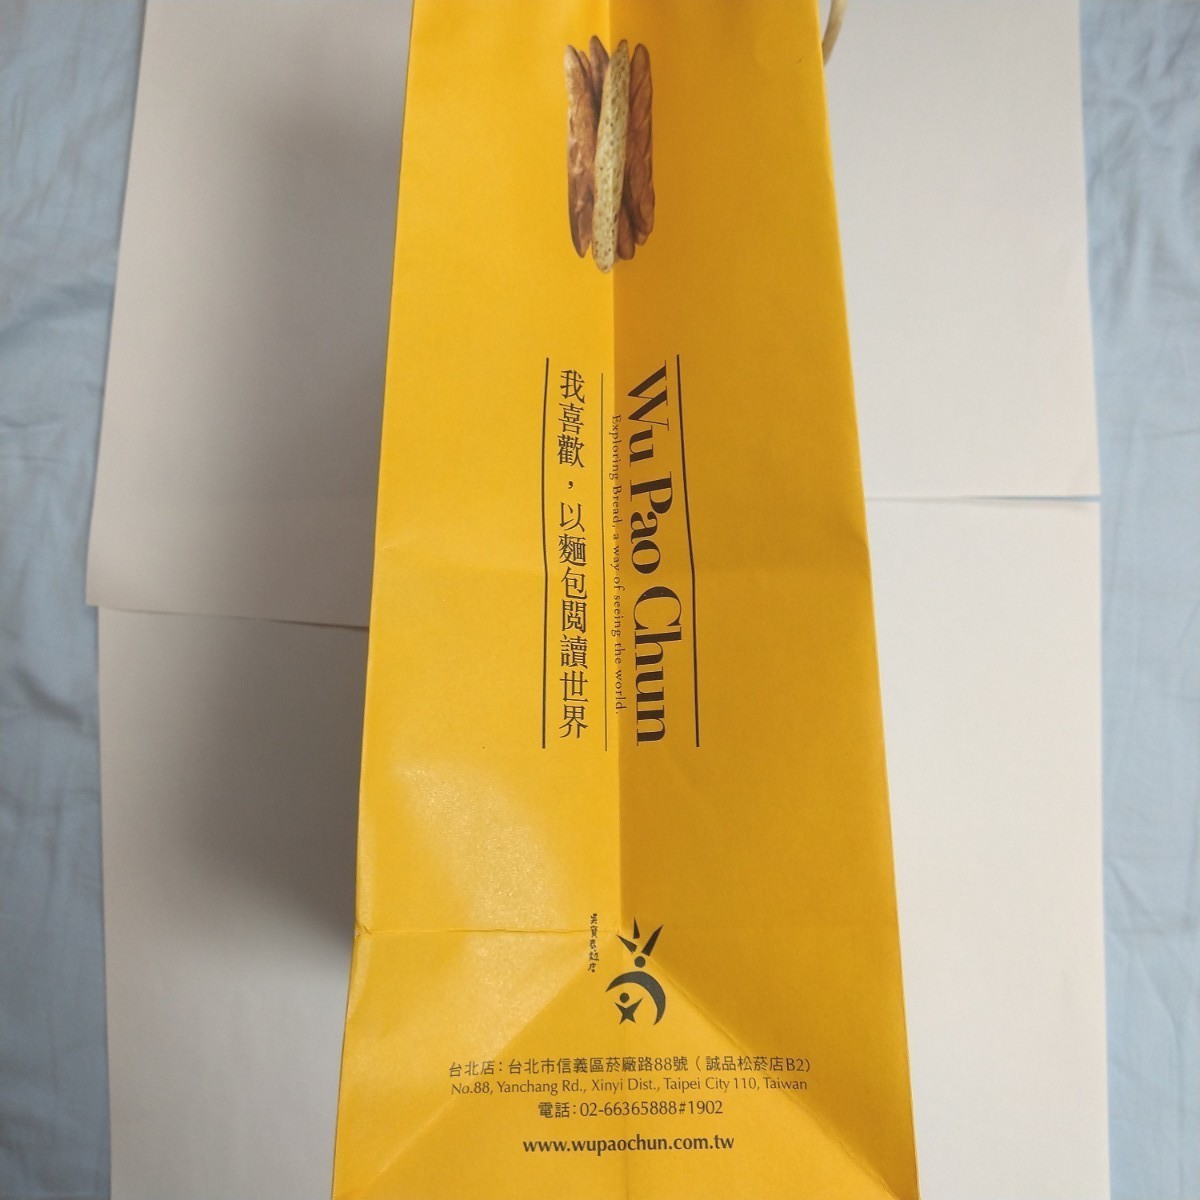 【ツオップ修行後世界一】「呉寶春麥方店（Wu Pao Chum Bakery）」紙袋